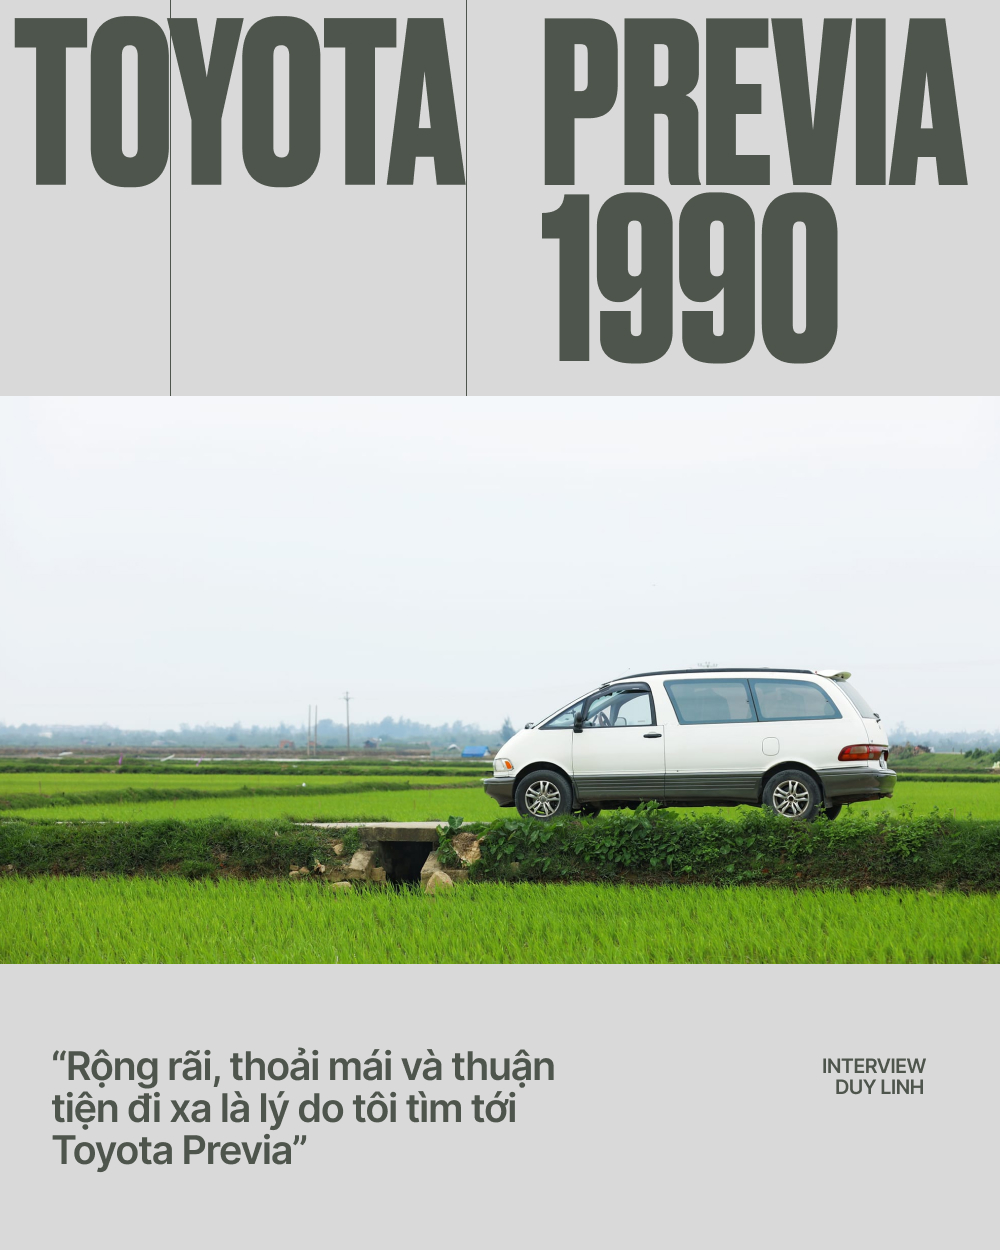 Tôi bỏ 180 triệu mua Toyota Previa 1990 chạy gần 10 năm nay: ''Ngốn xăng nhưng đáng từng đồng'' - ảnh 2